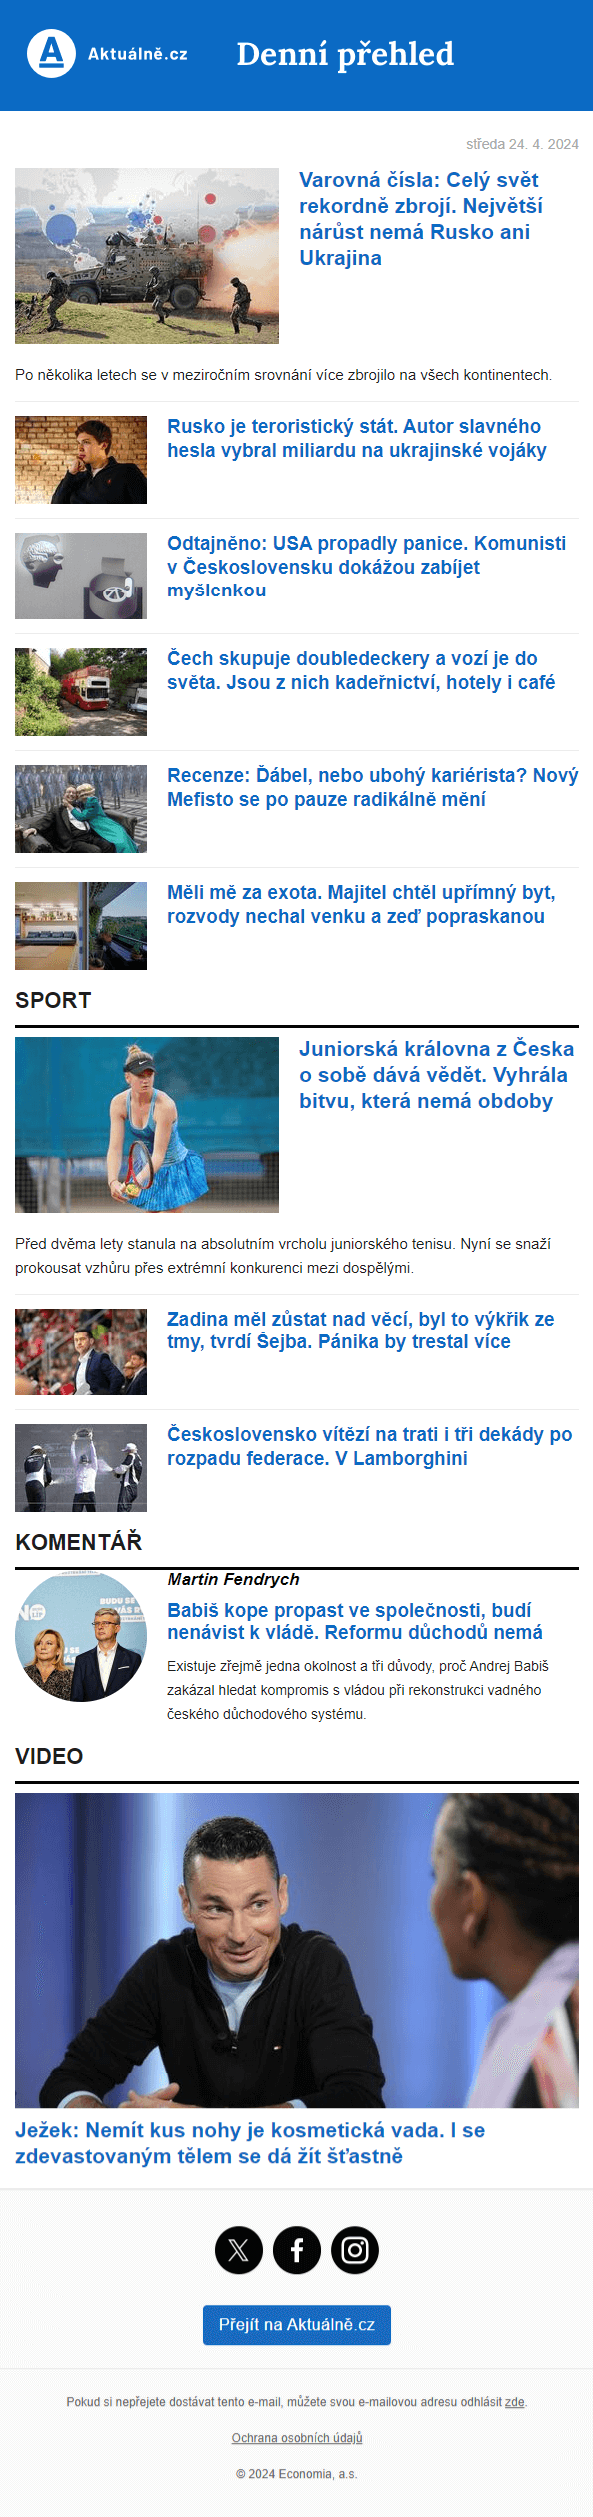 Náhled newsletteru denní přehled Aktuálně.cz